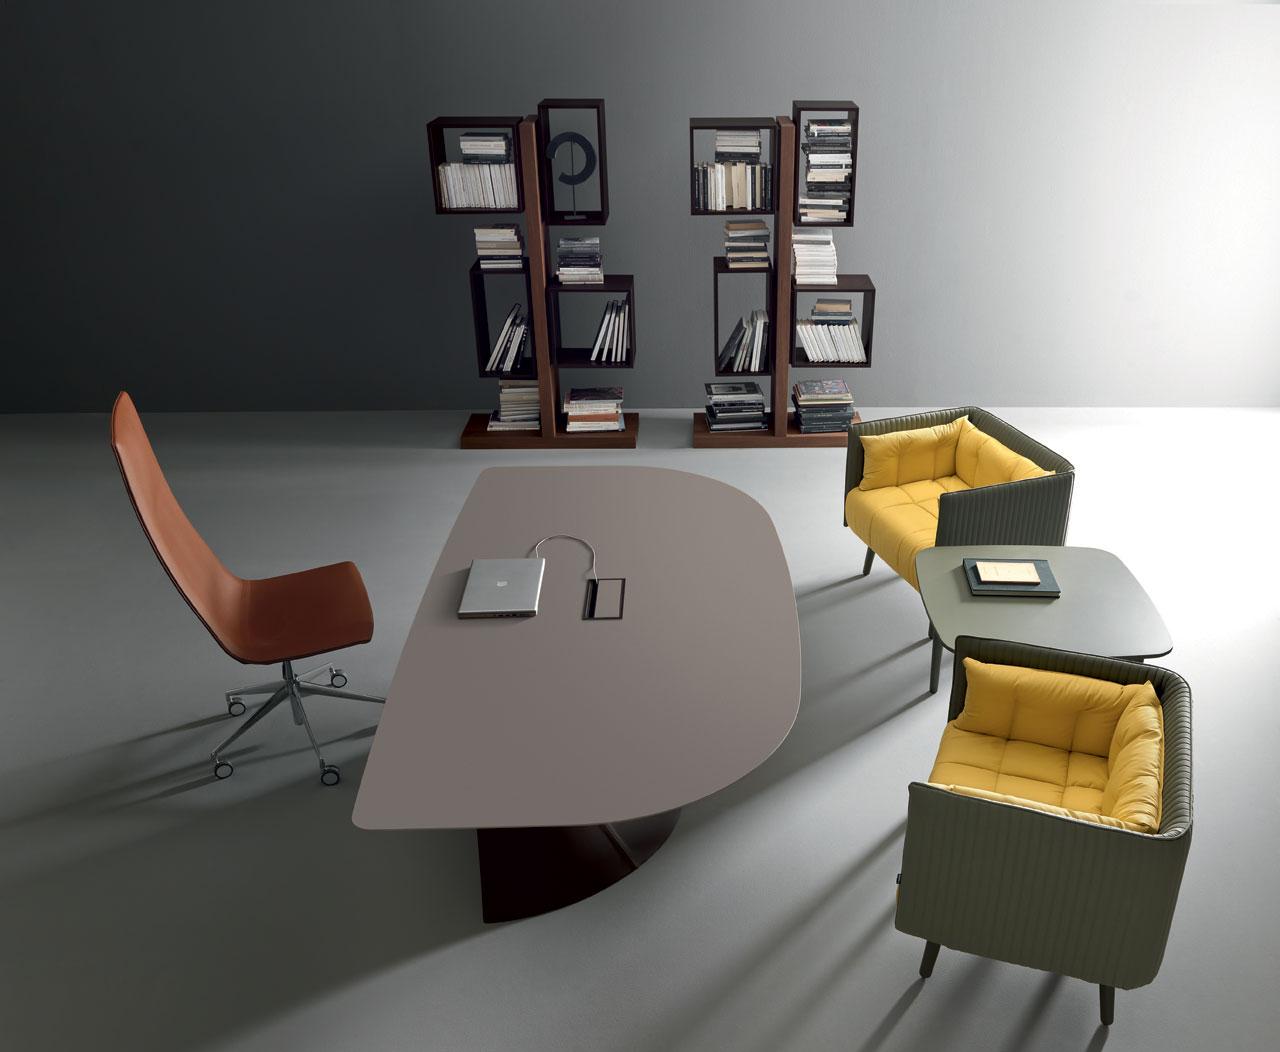 libreria biblioteca arredamento casa ufficio on line moderno di lusso 2015 design inspiration web made in italy noce laccato originale contemporaneo